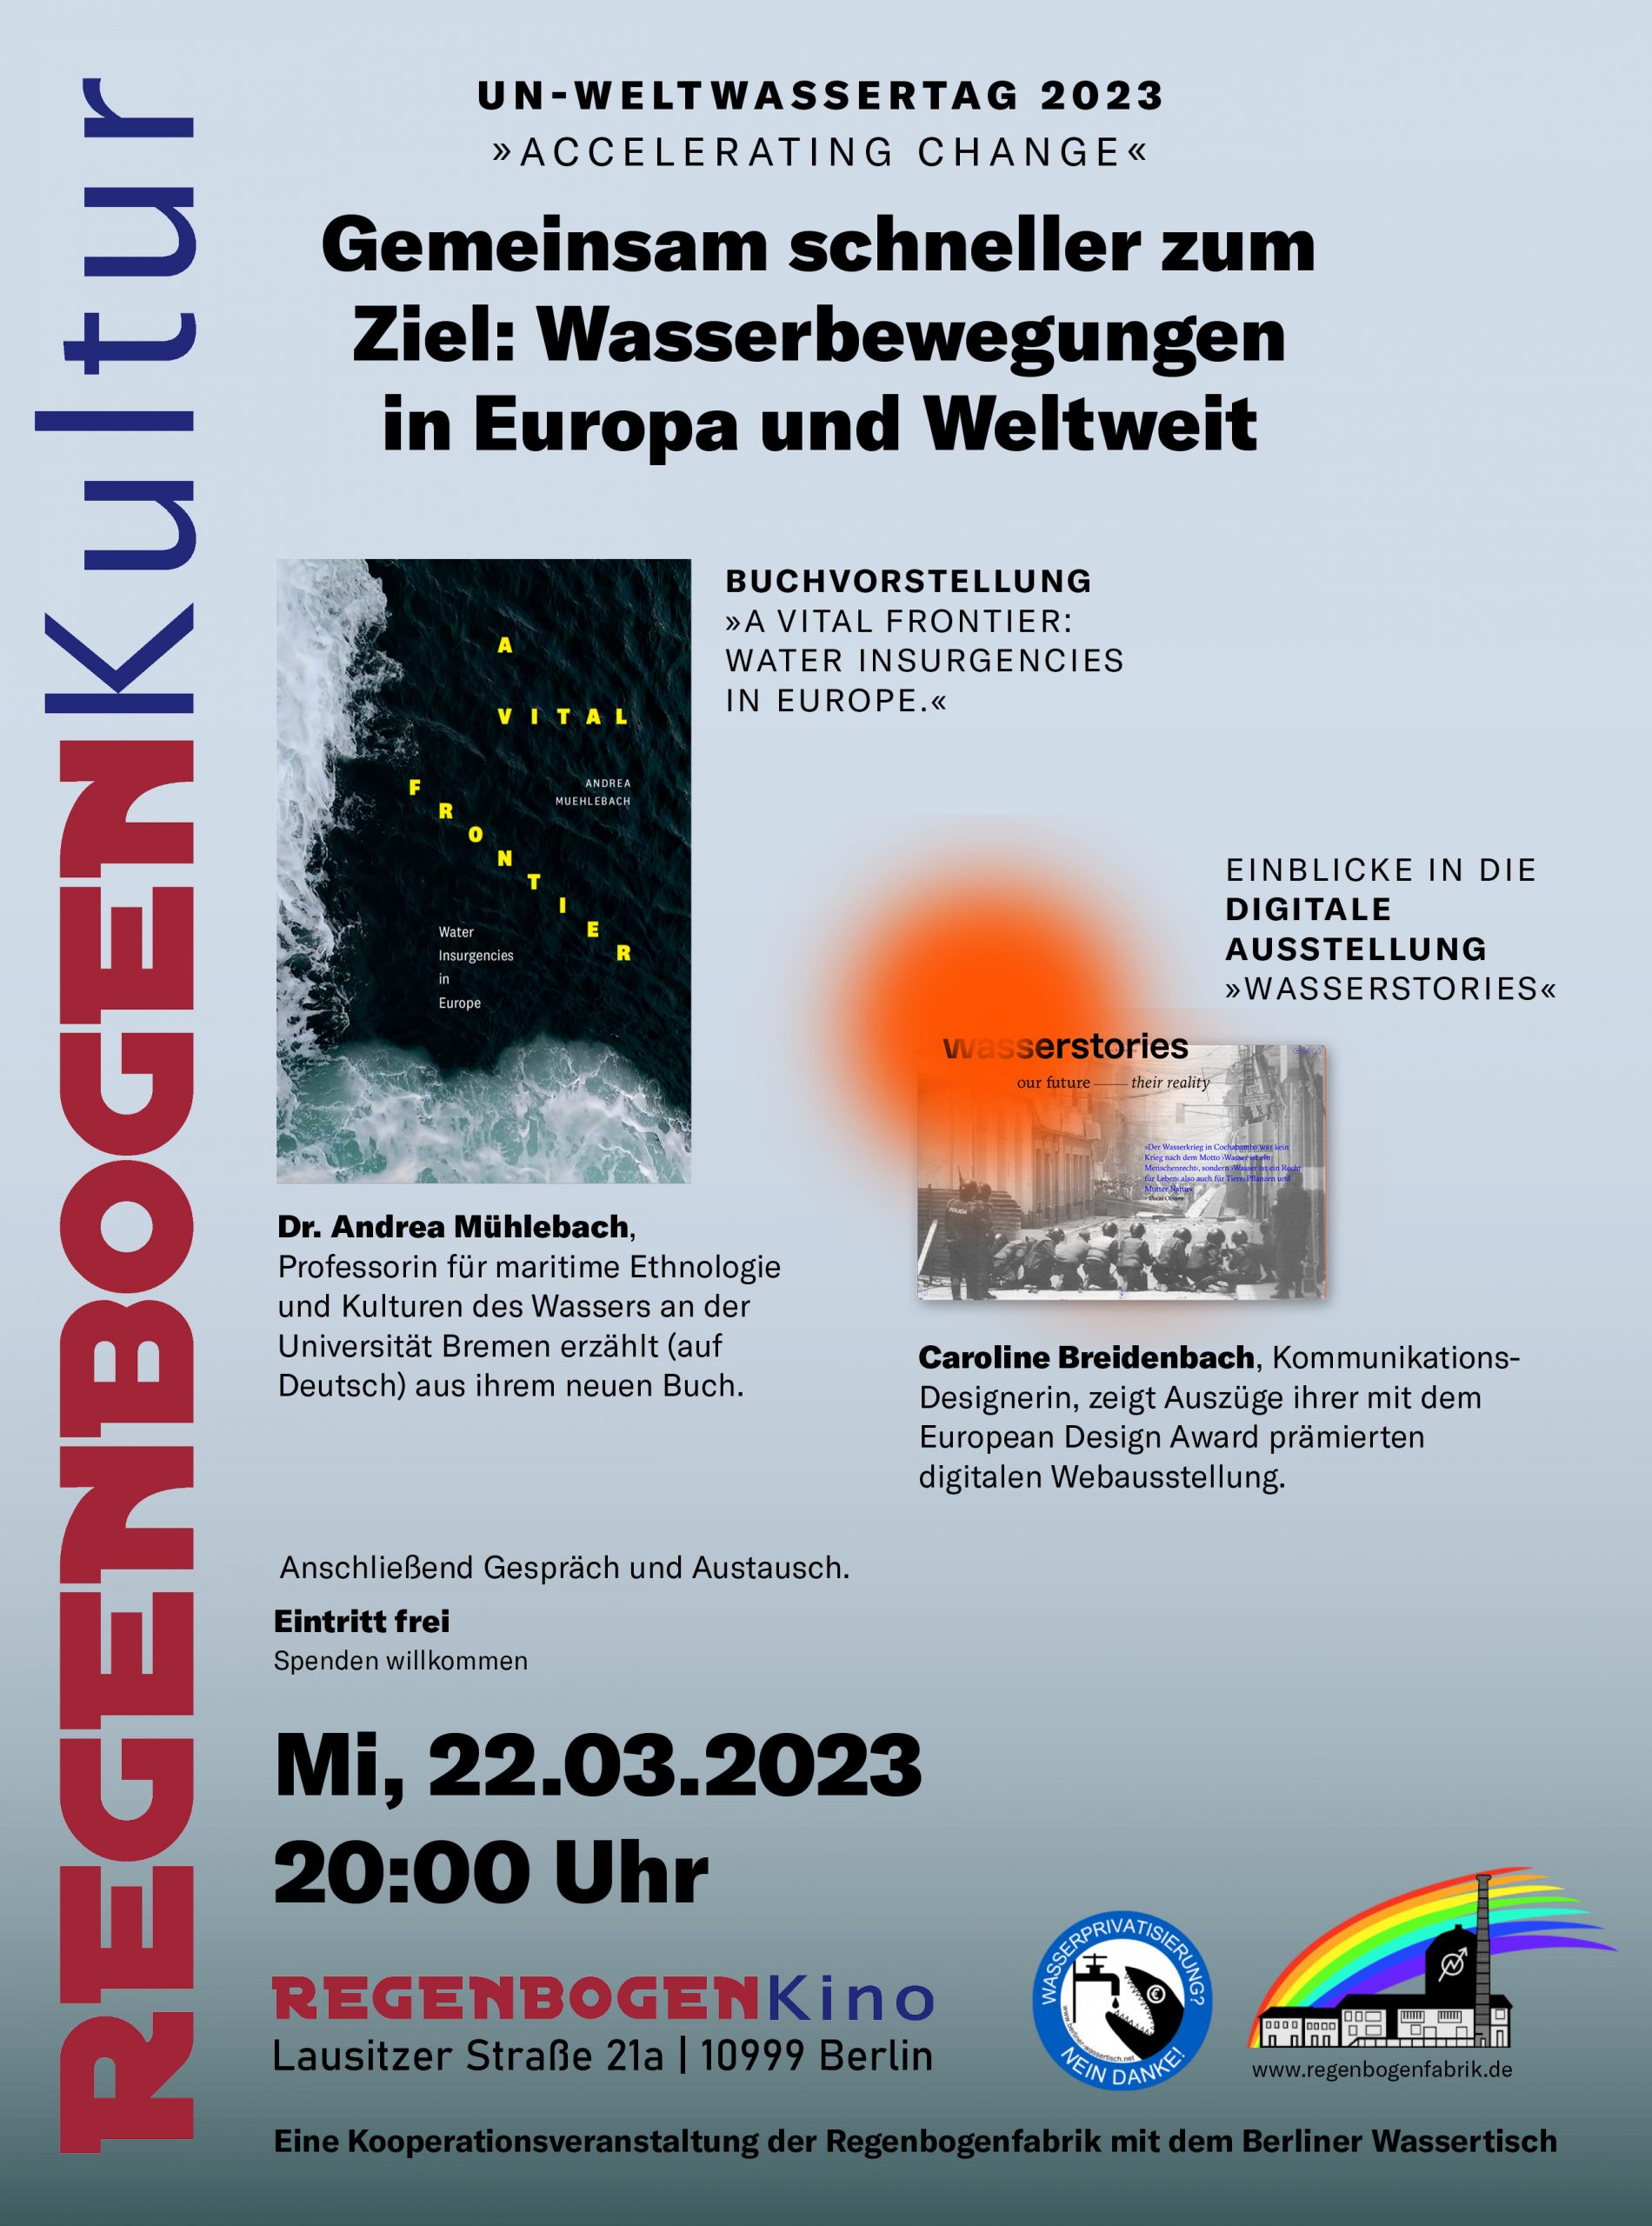 Einladung zum Weltwassertag 2023: Wasserbewegungen in Europa und Weltweit – Veranstaltung im RegenbogenKino, 22. März 2023